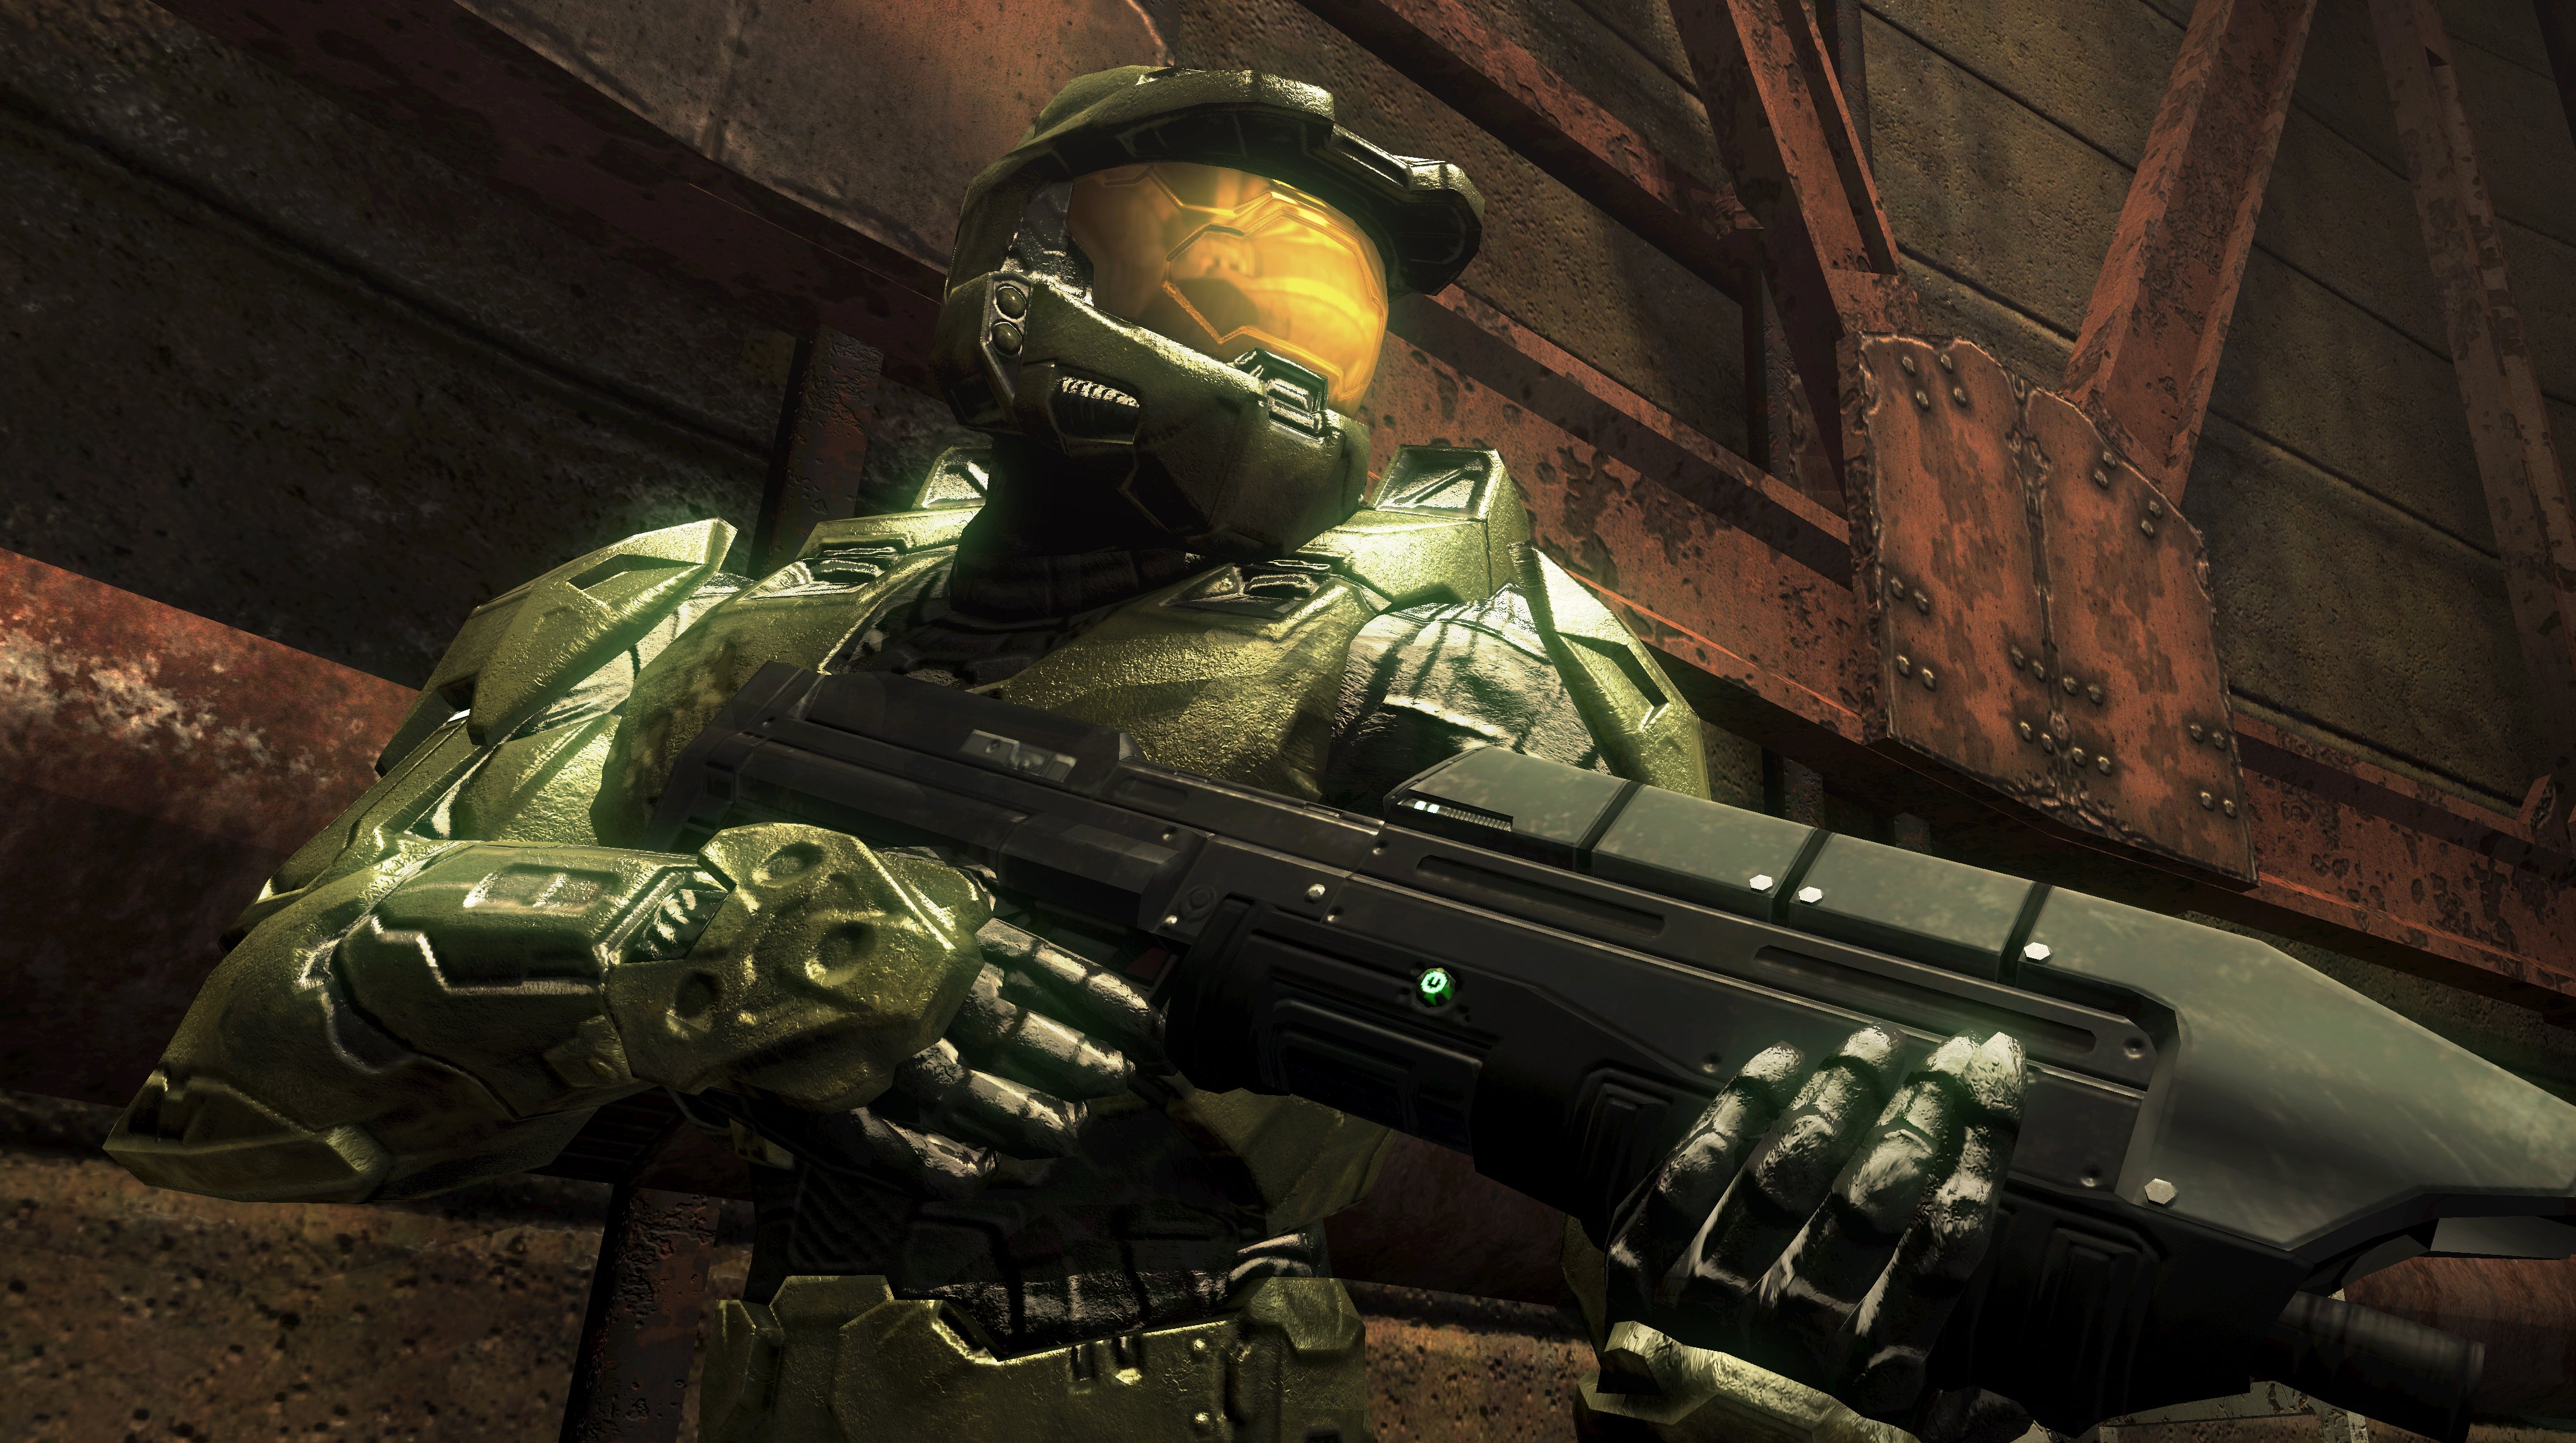 Immagine di Halo addio Xbox 360. Server spenti e giocatori che si riuniscono in tributi e celebrazioni